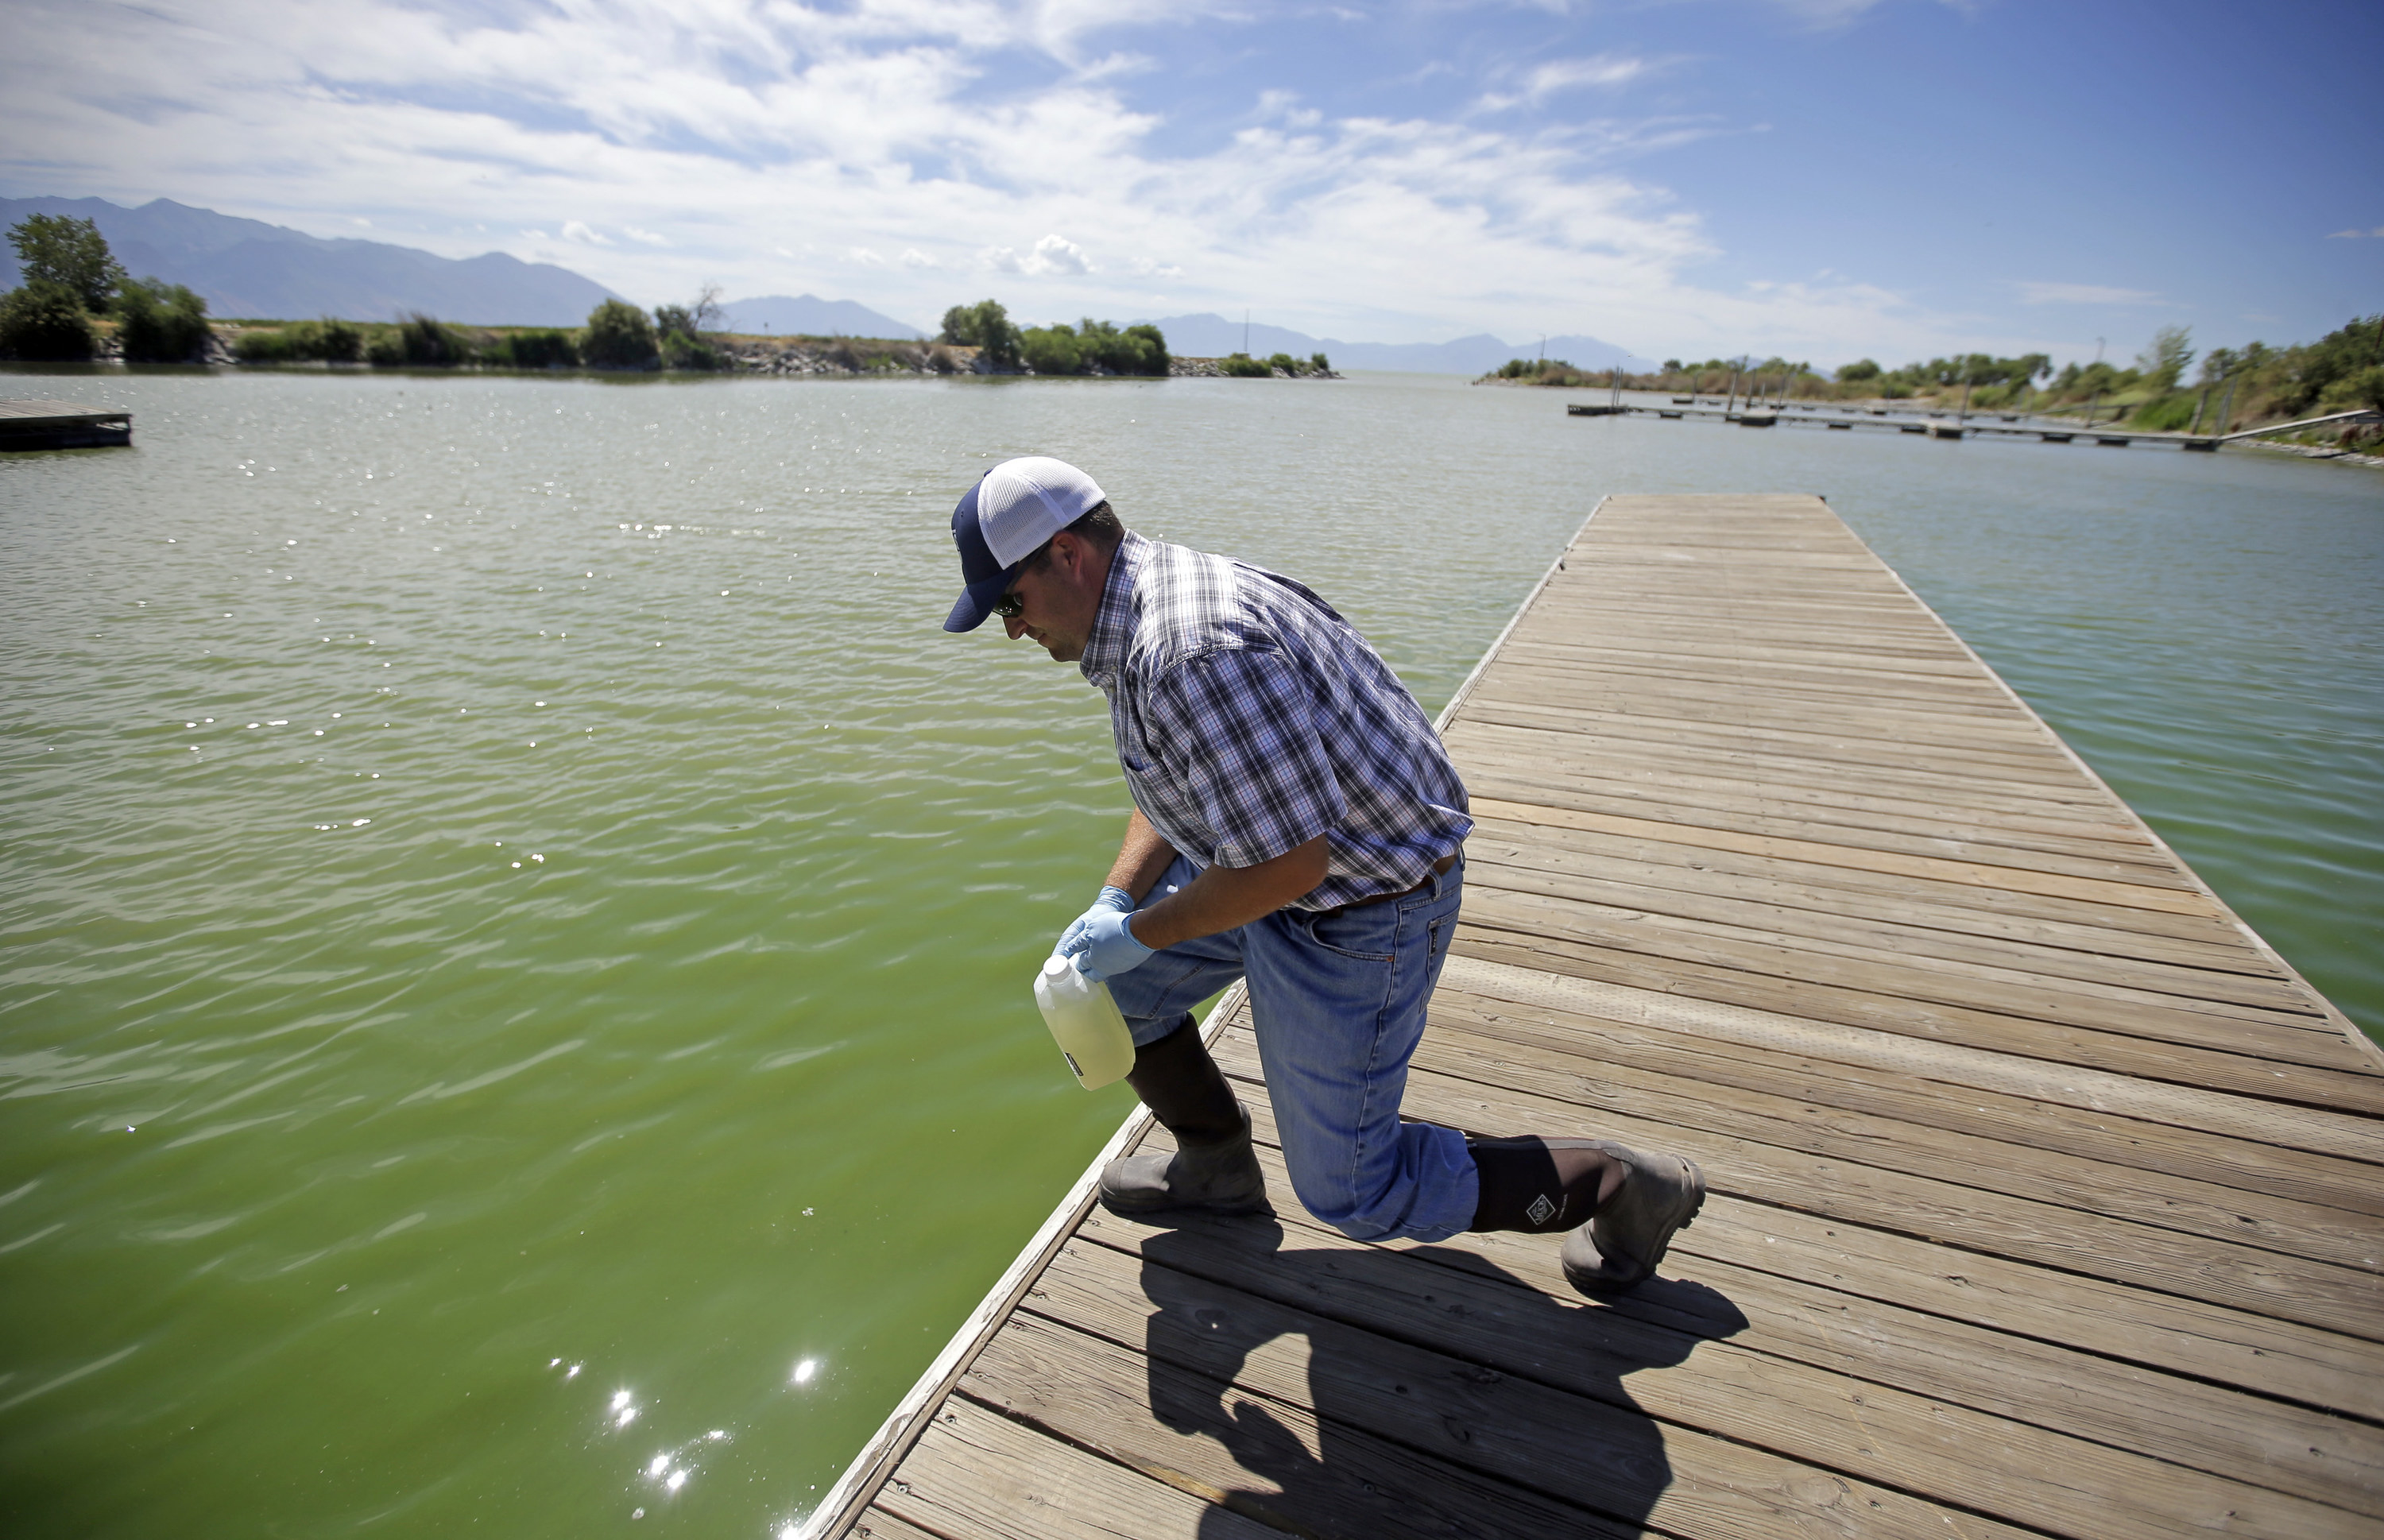 Jason Garrett, water quality bureau director at the Utah County Health Department, looks at the water in Utah Lake